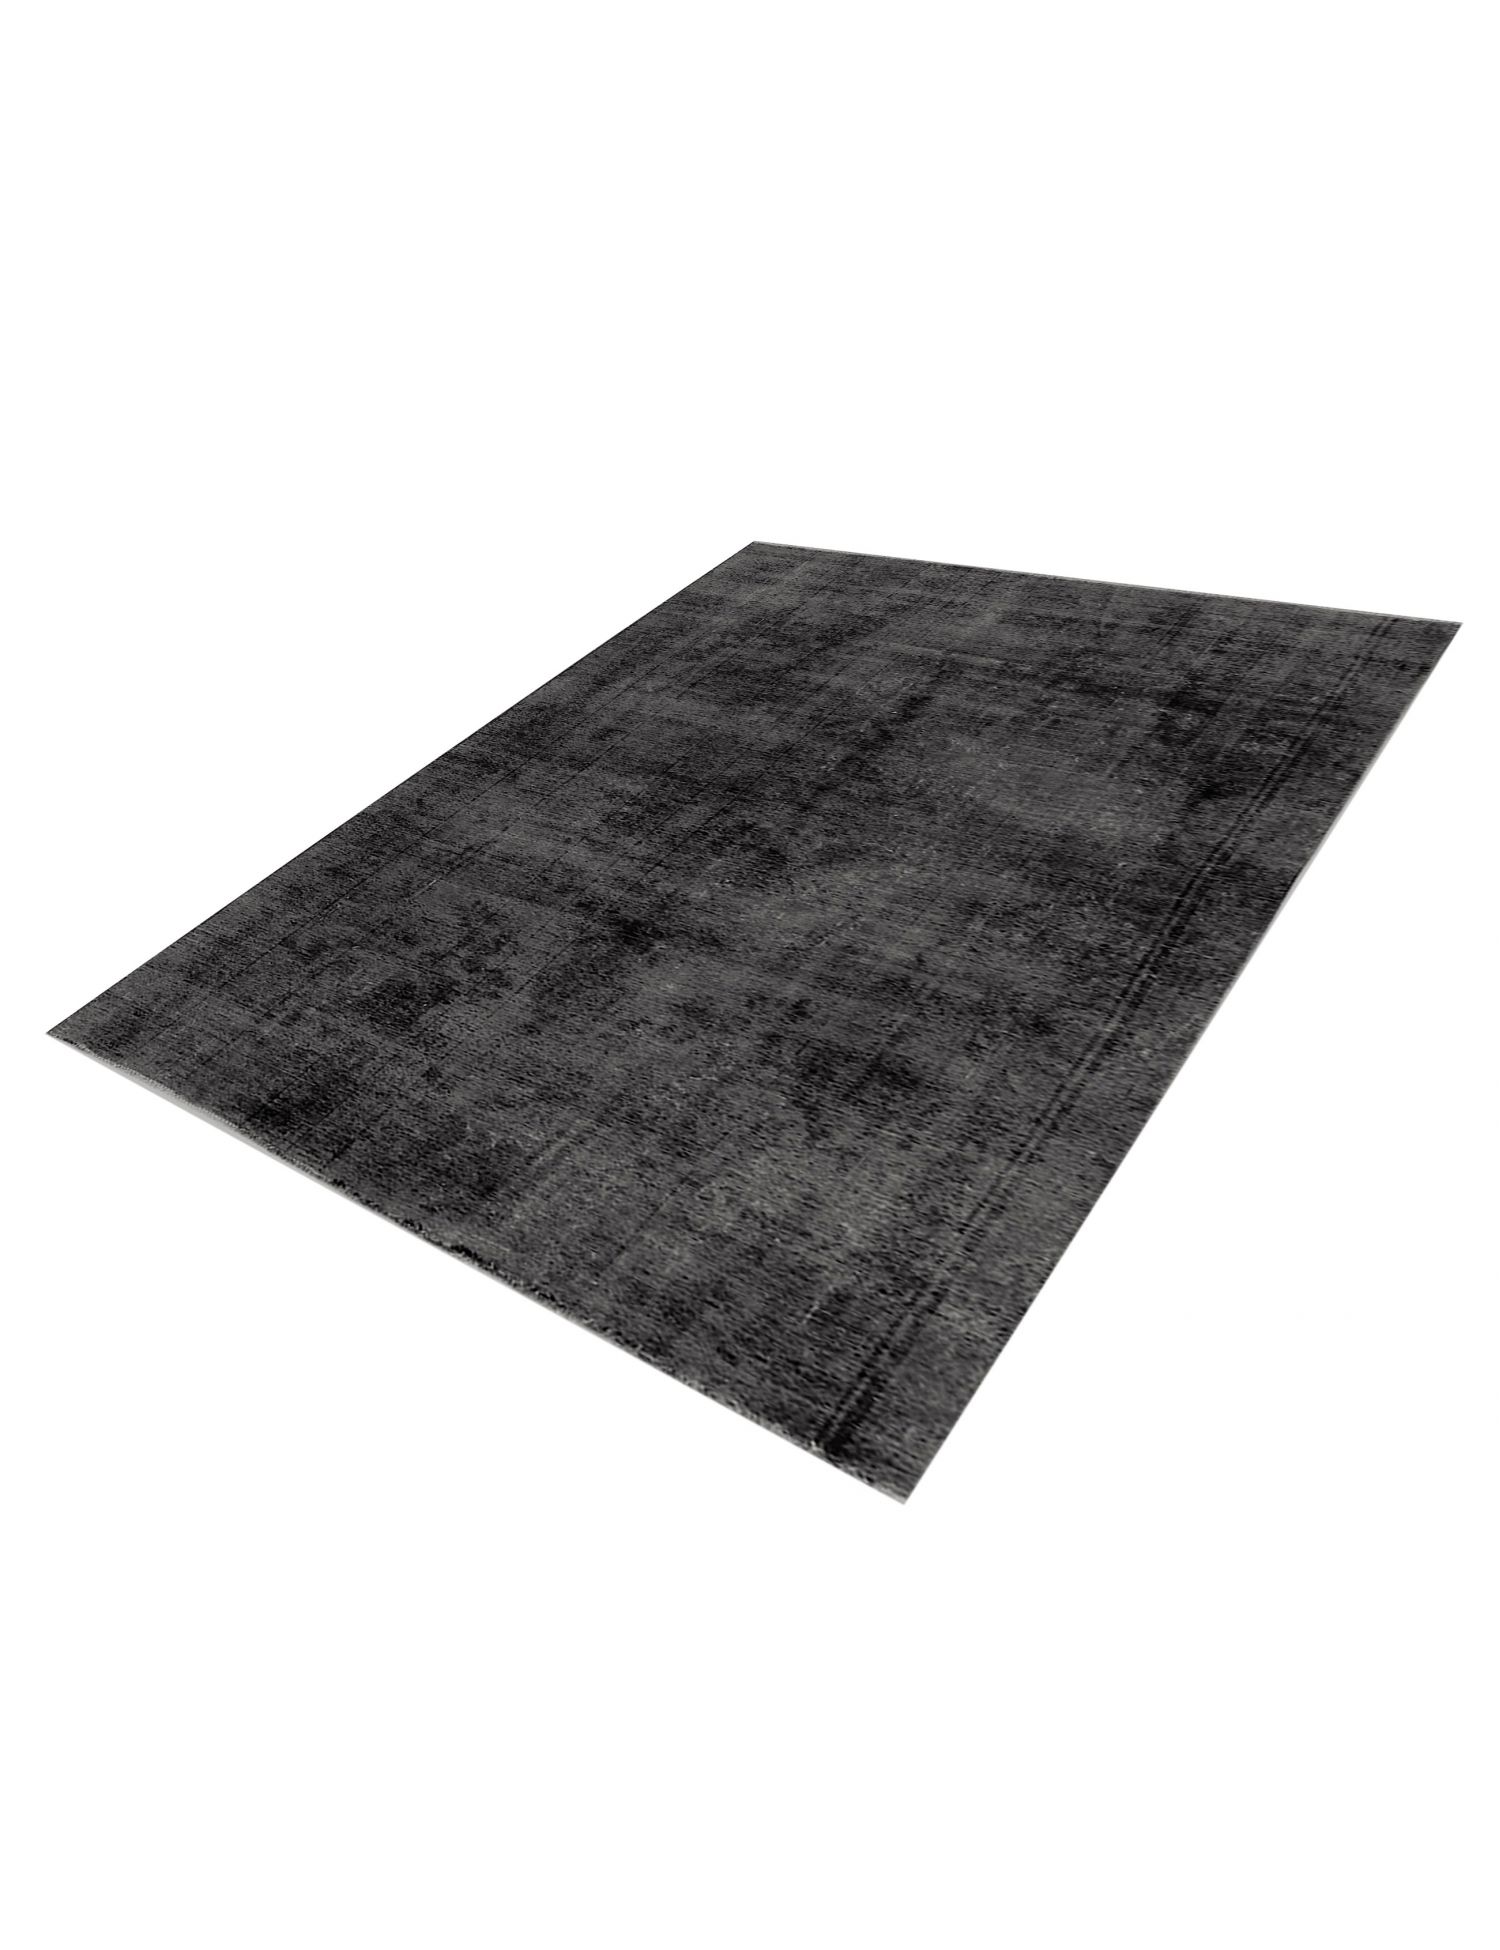 Persian Vintage Carpet  black <br/>275 x 180 cm